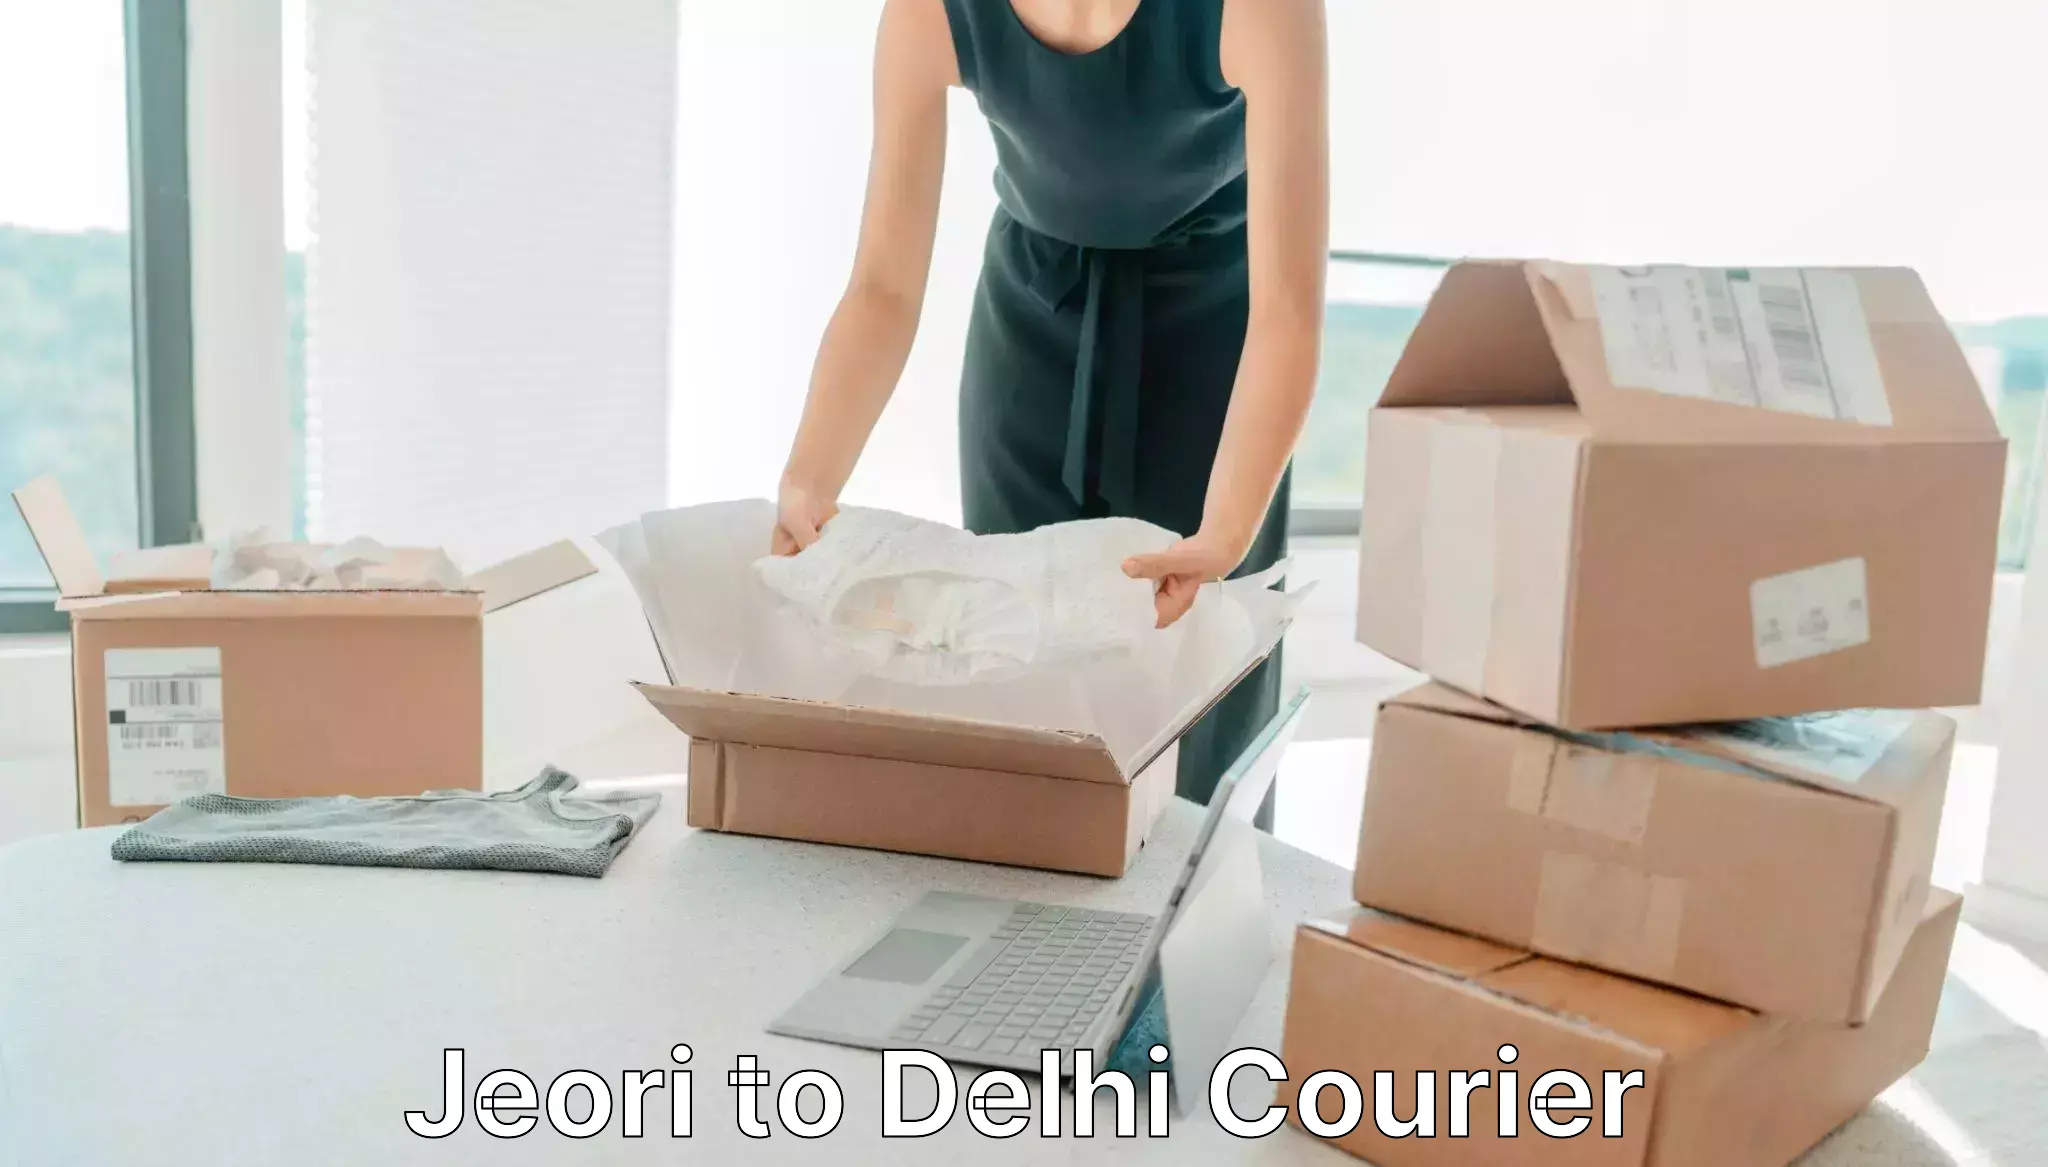 Customer-friendly courier services Jeori to Delhi